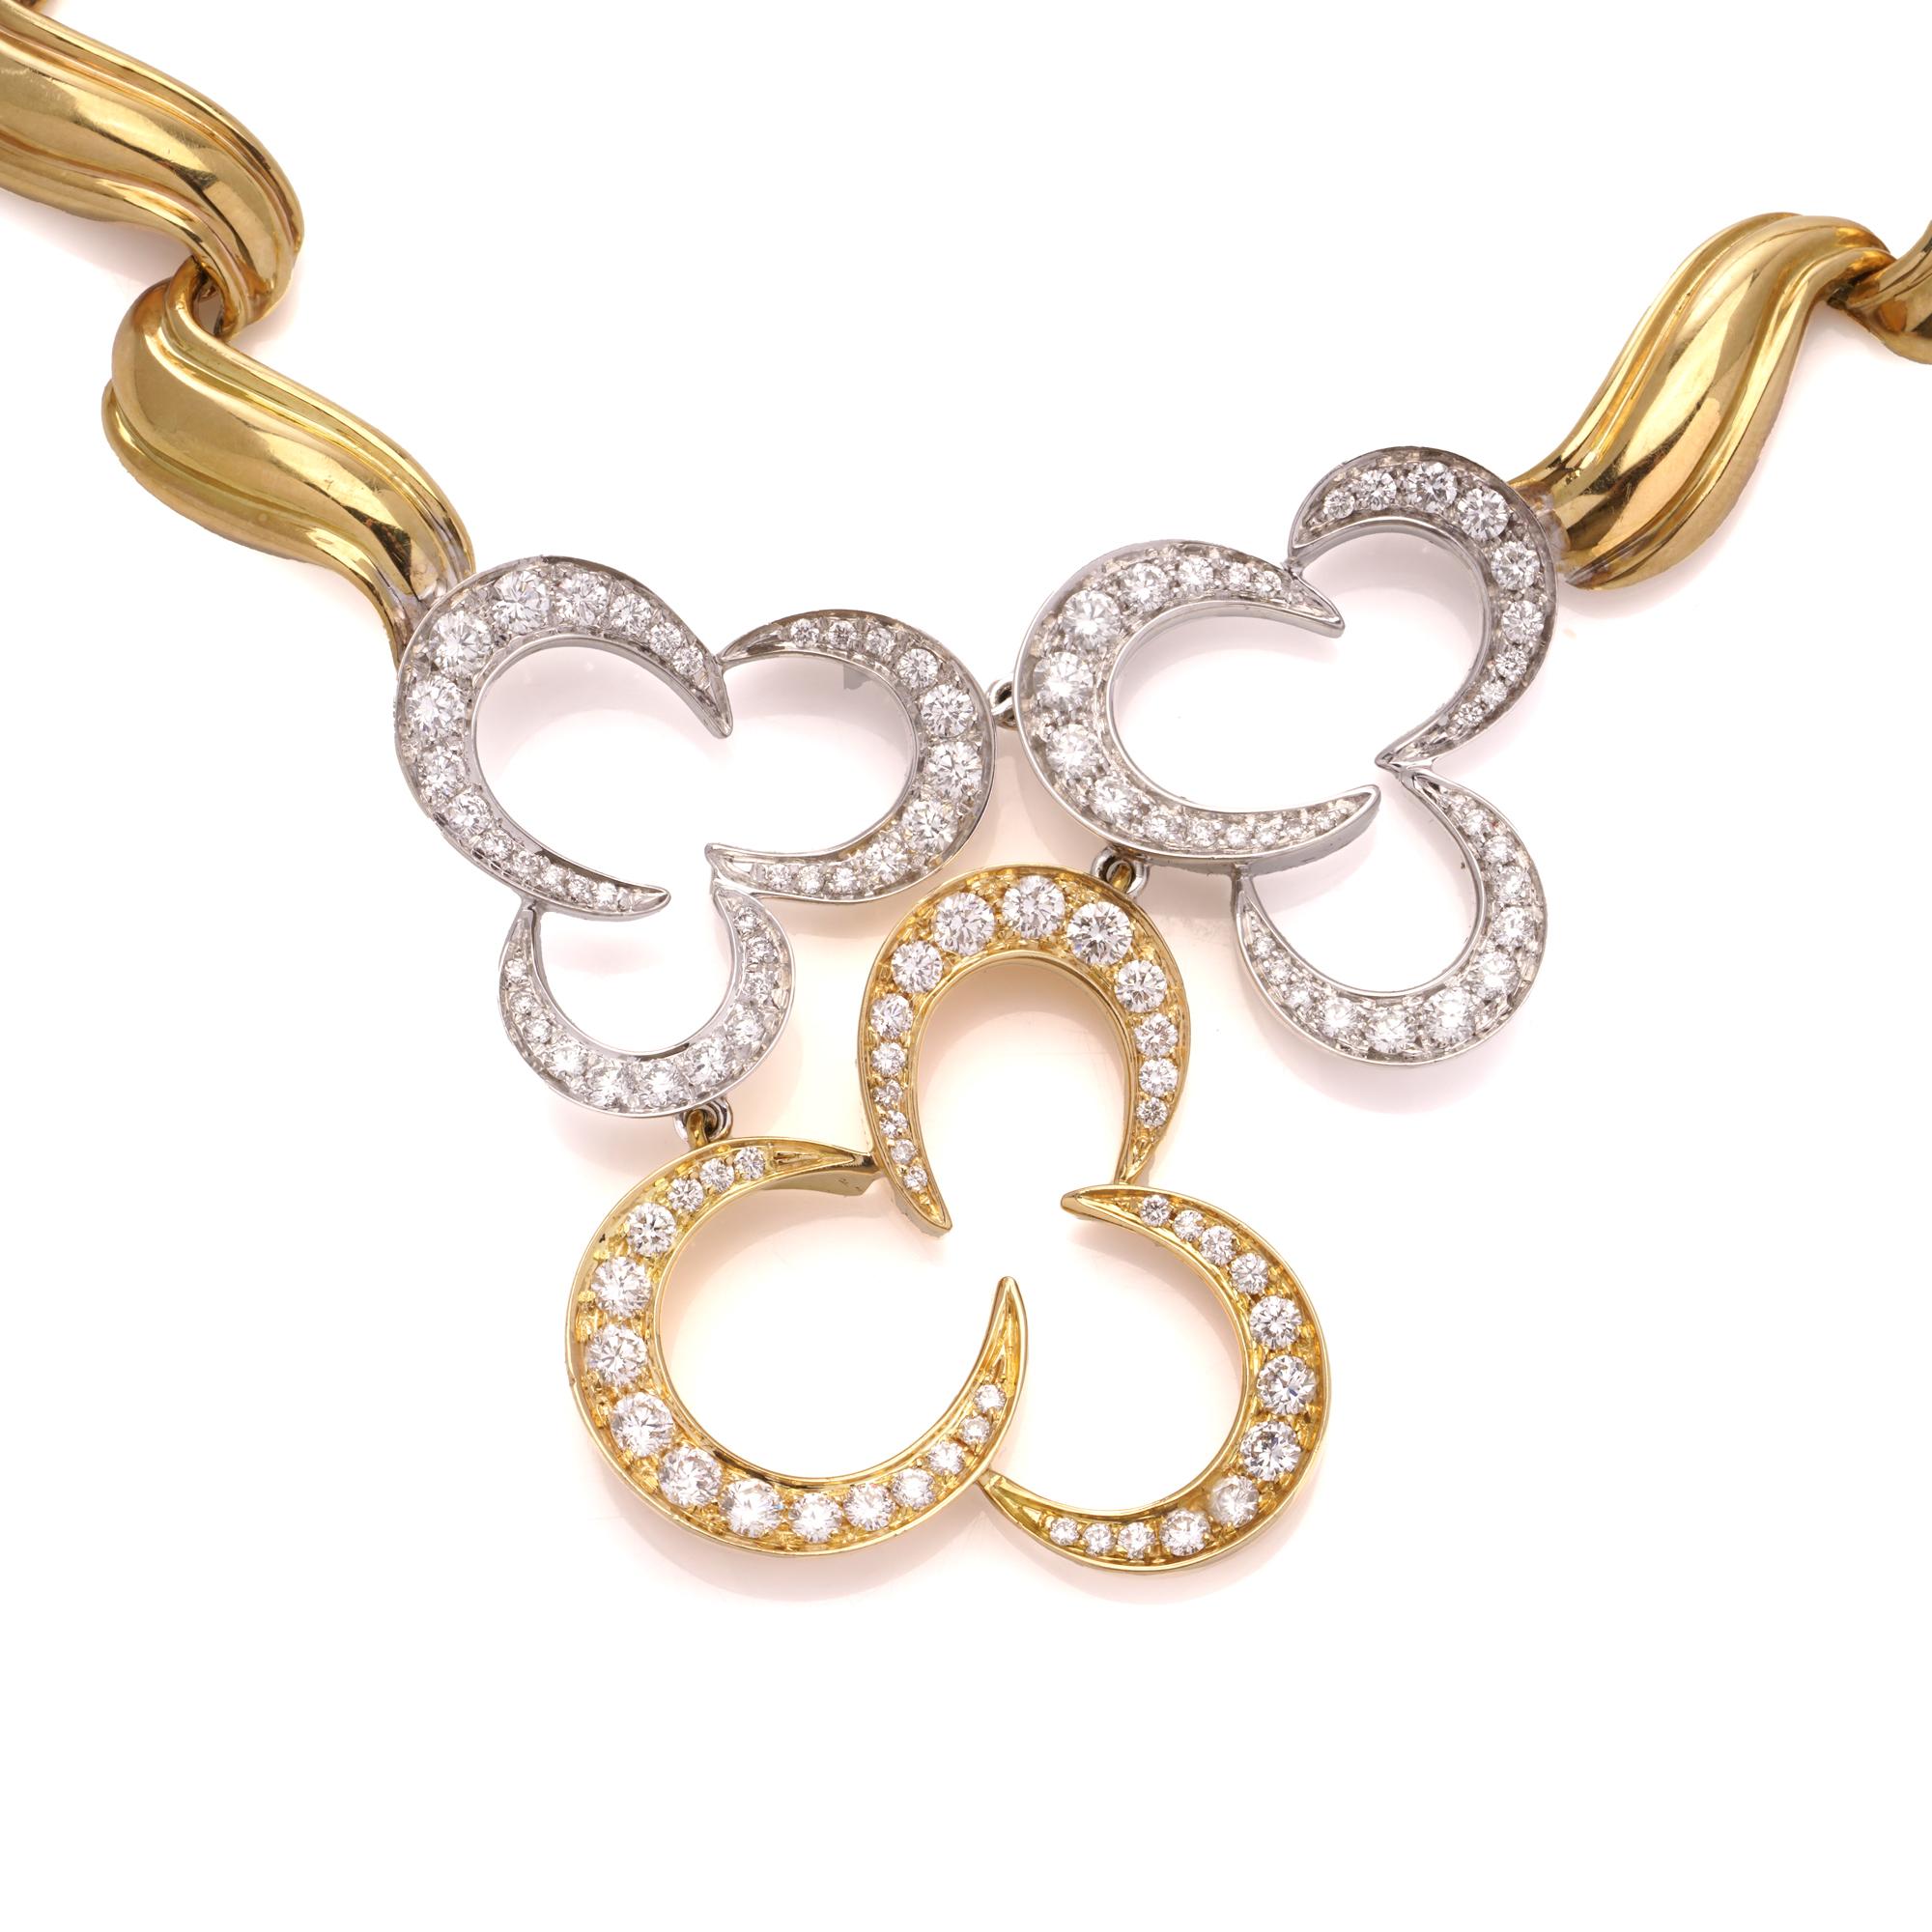 Vintage Chaumet chunky bib necklace en or jaune et blanc 18kt orné de trois pendentifs en forme de tête de fleur sertis de diamants ronds de taille brillant.
Entièrement poinçonné. 

Dimensions :
Largeur intérieure : 15 cm 
Longueur x largeur du